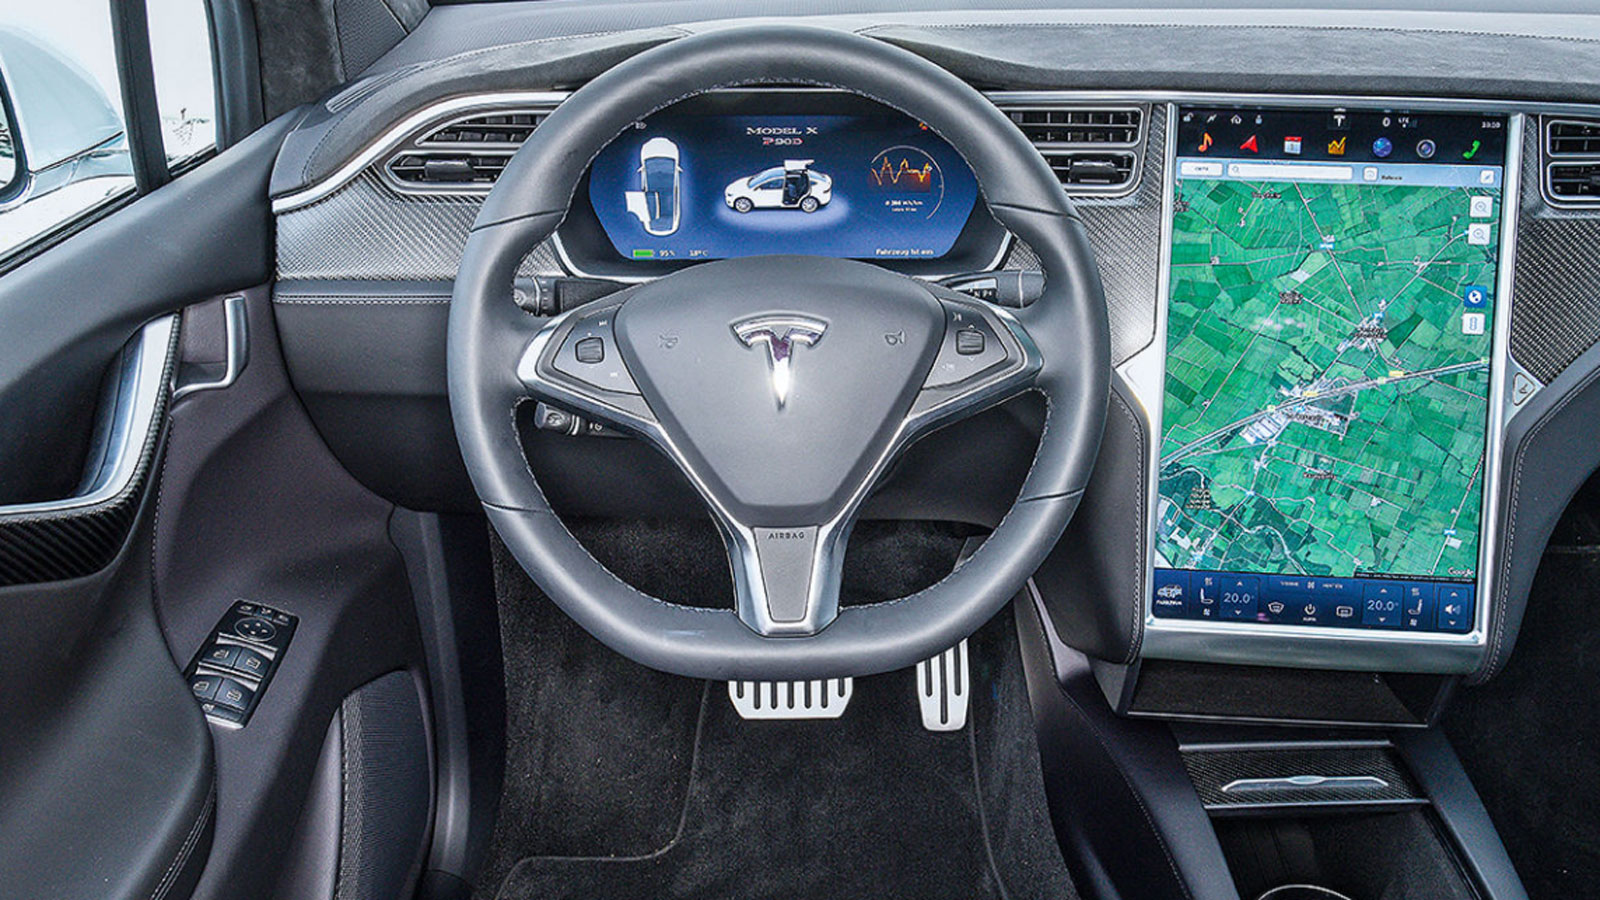 Μεταχειρισμένο Tesla Model X 8ετίας: Πόσο καλό είναι;